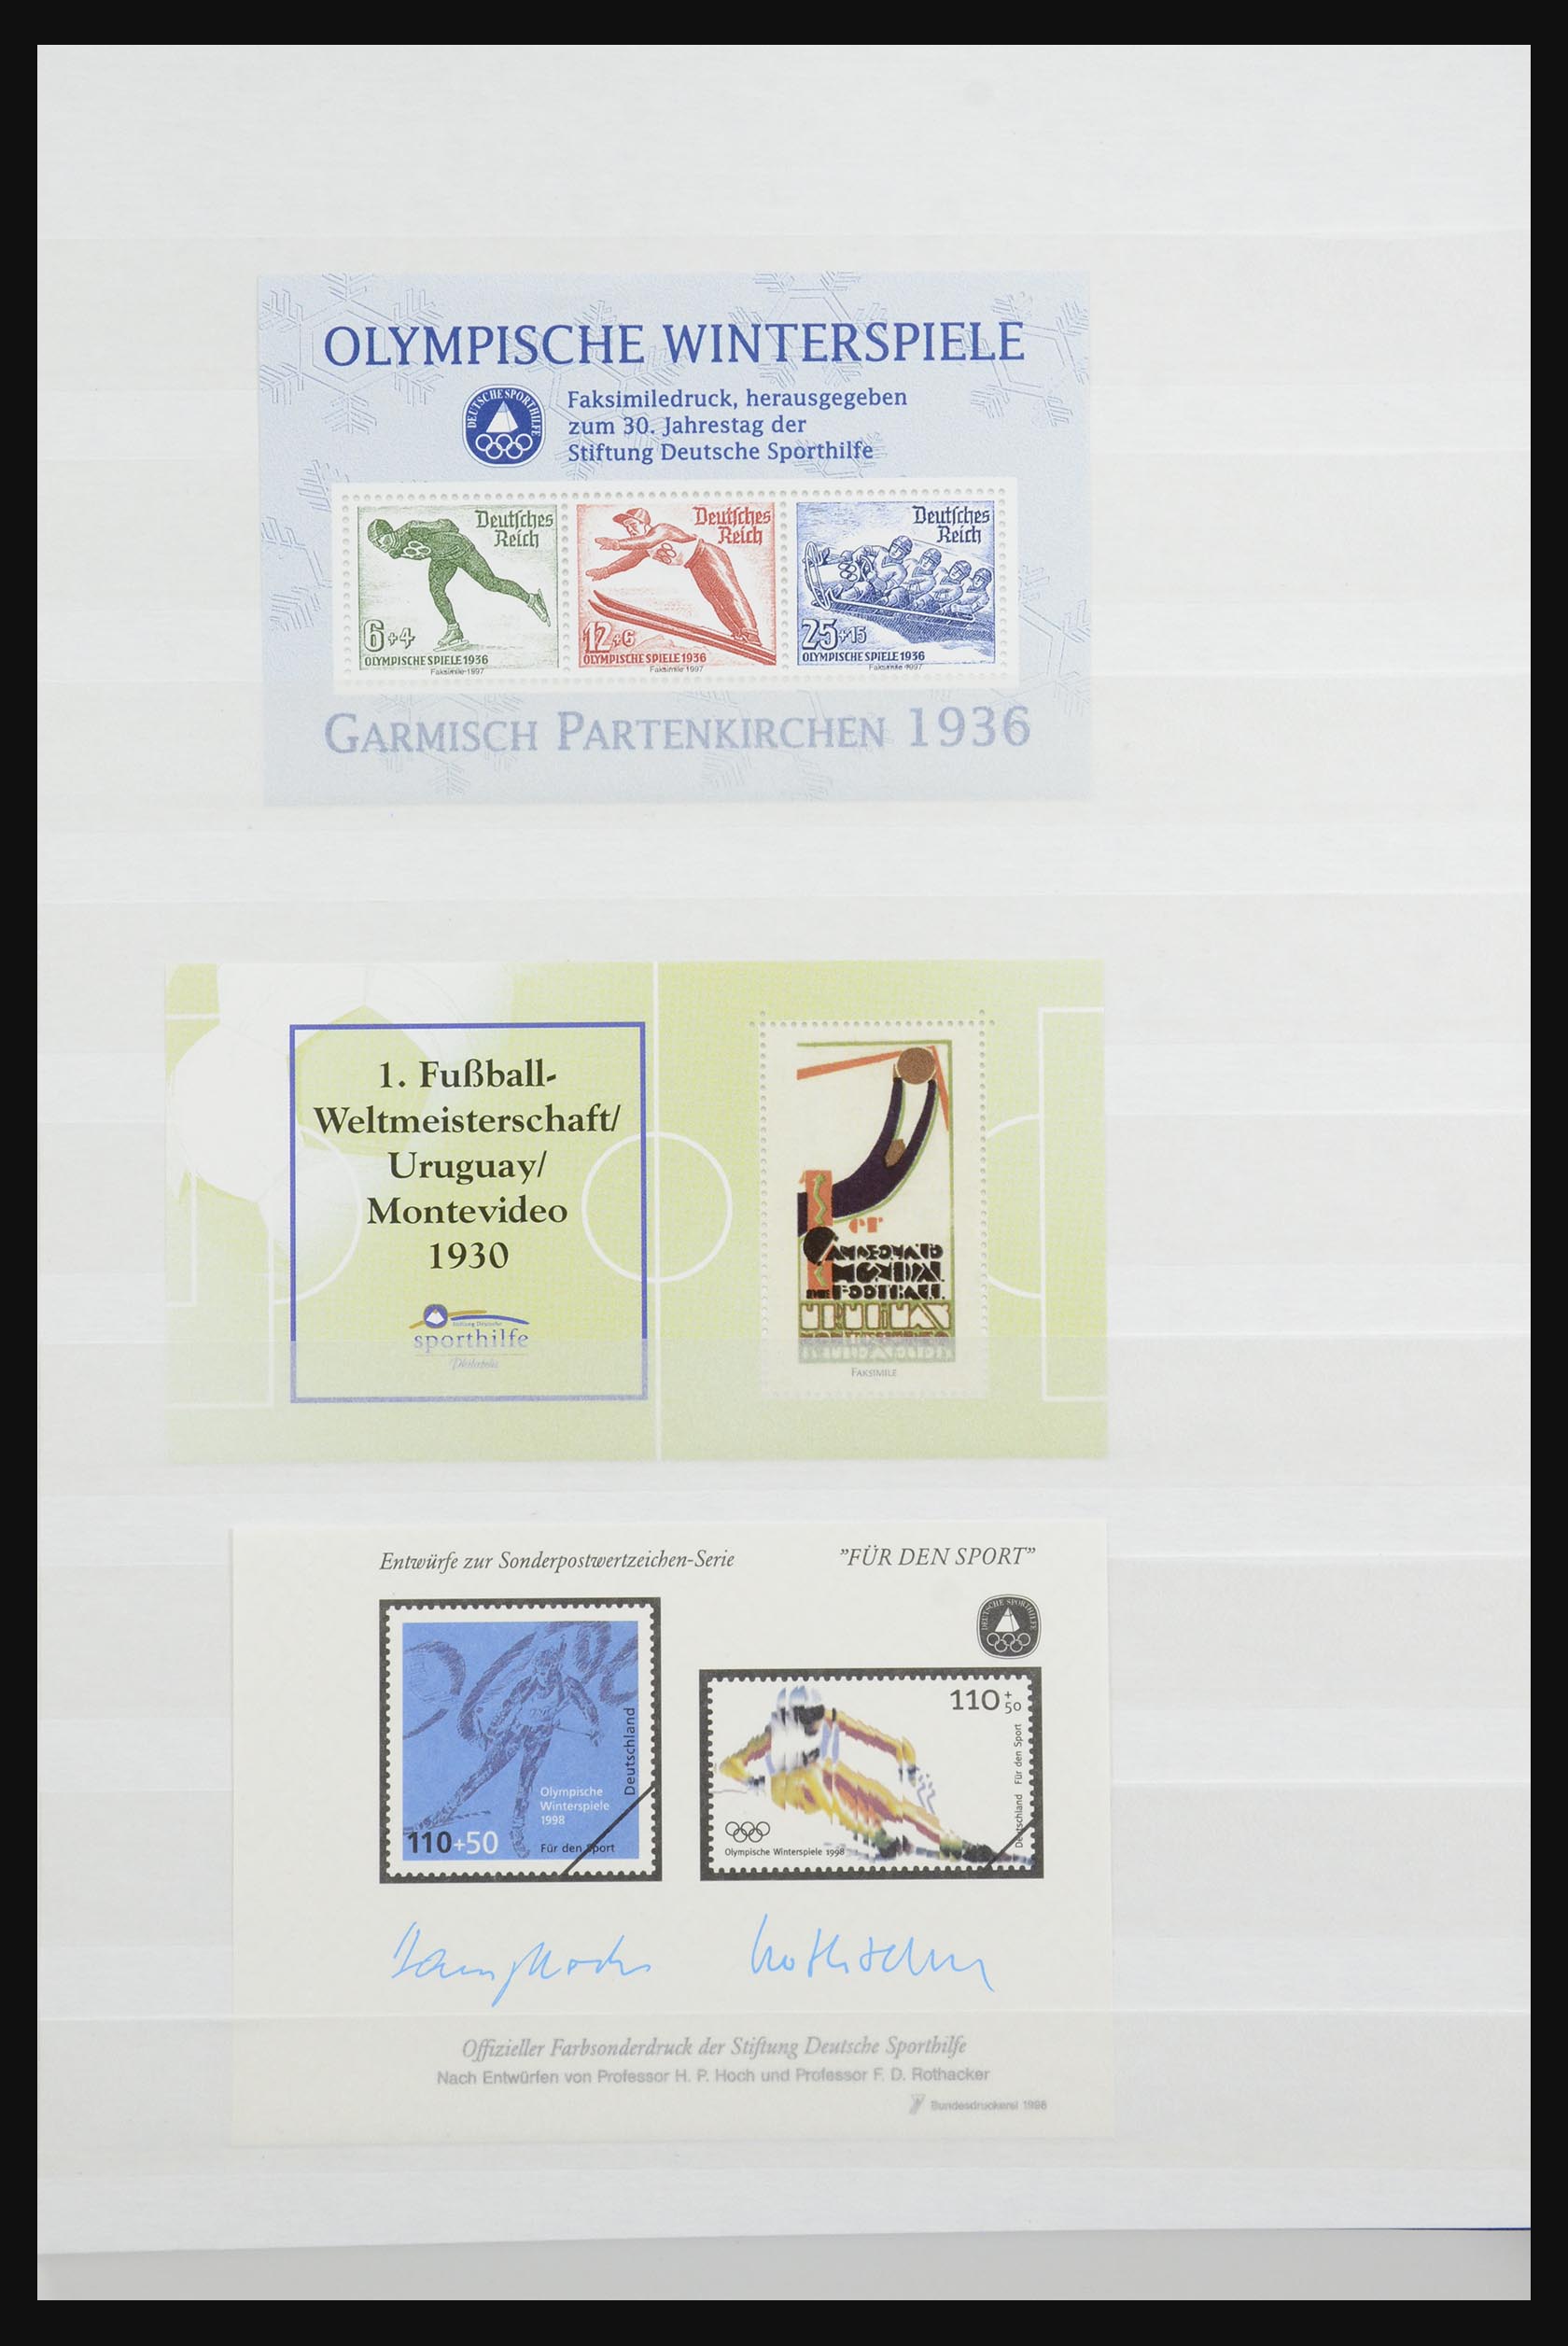 32050 030 - 32050 Bundespost speciale blokken 1980-2010.